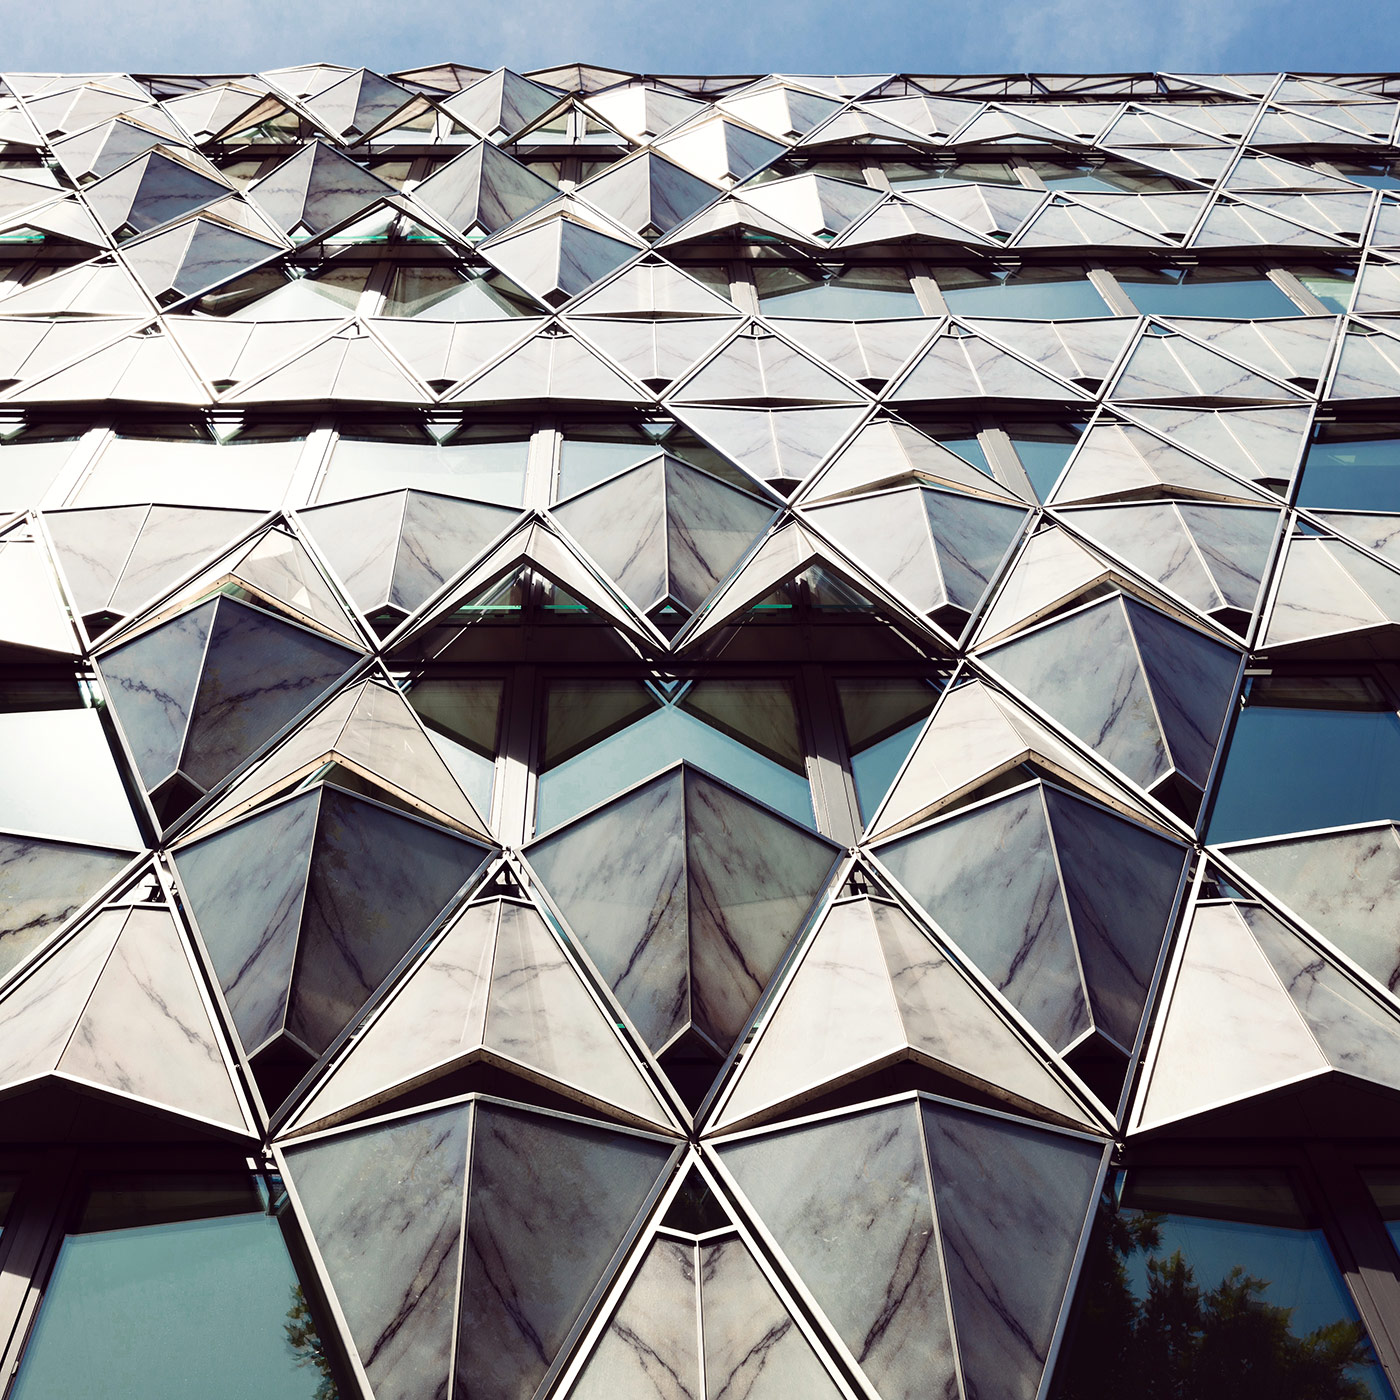 Origami Building <br />Location: Paris, France <br />Architect: Manuelle Gautrand Architecture